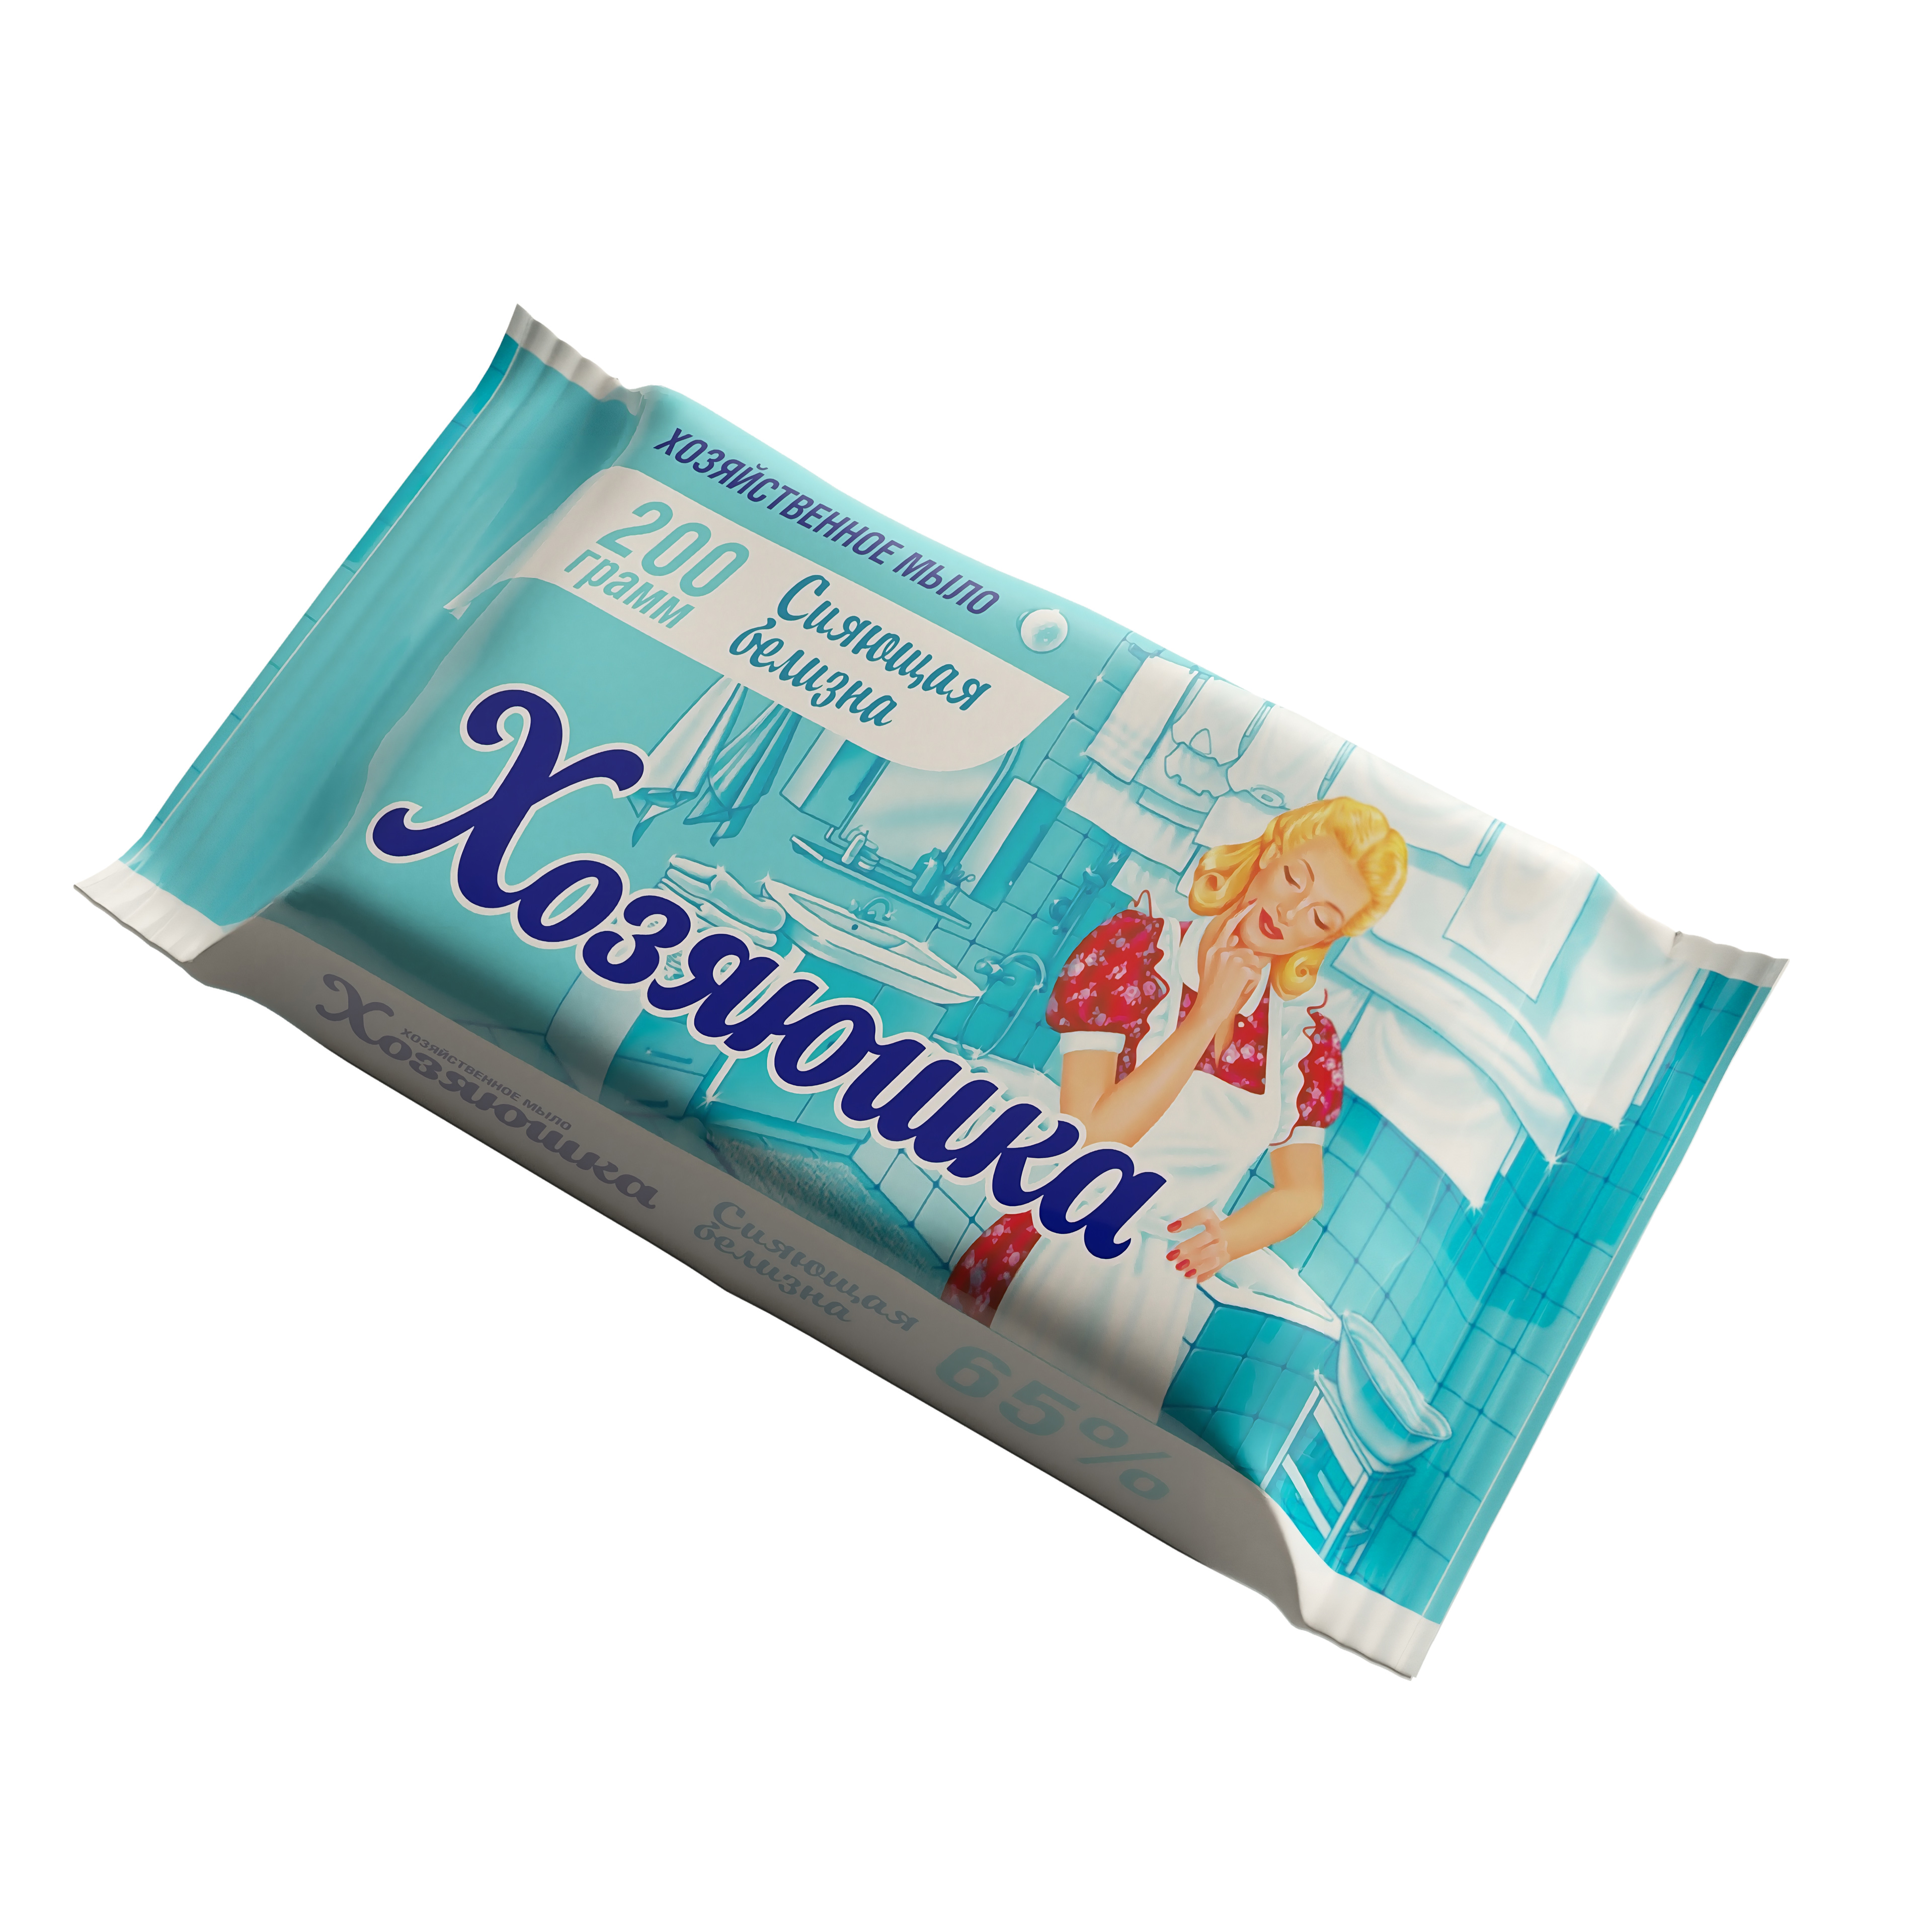 散装洗衣皂Hozyayushka 65%闪亮的白度